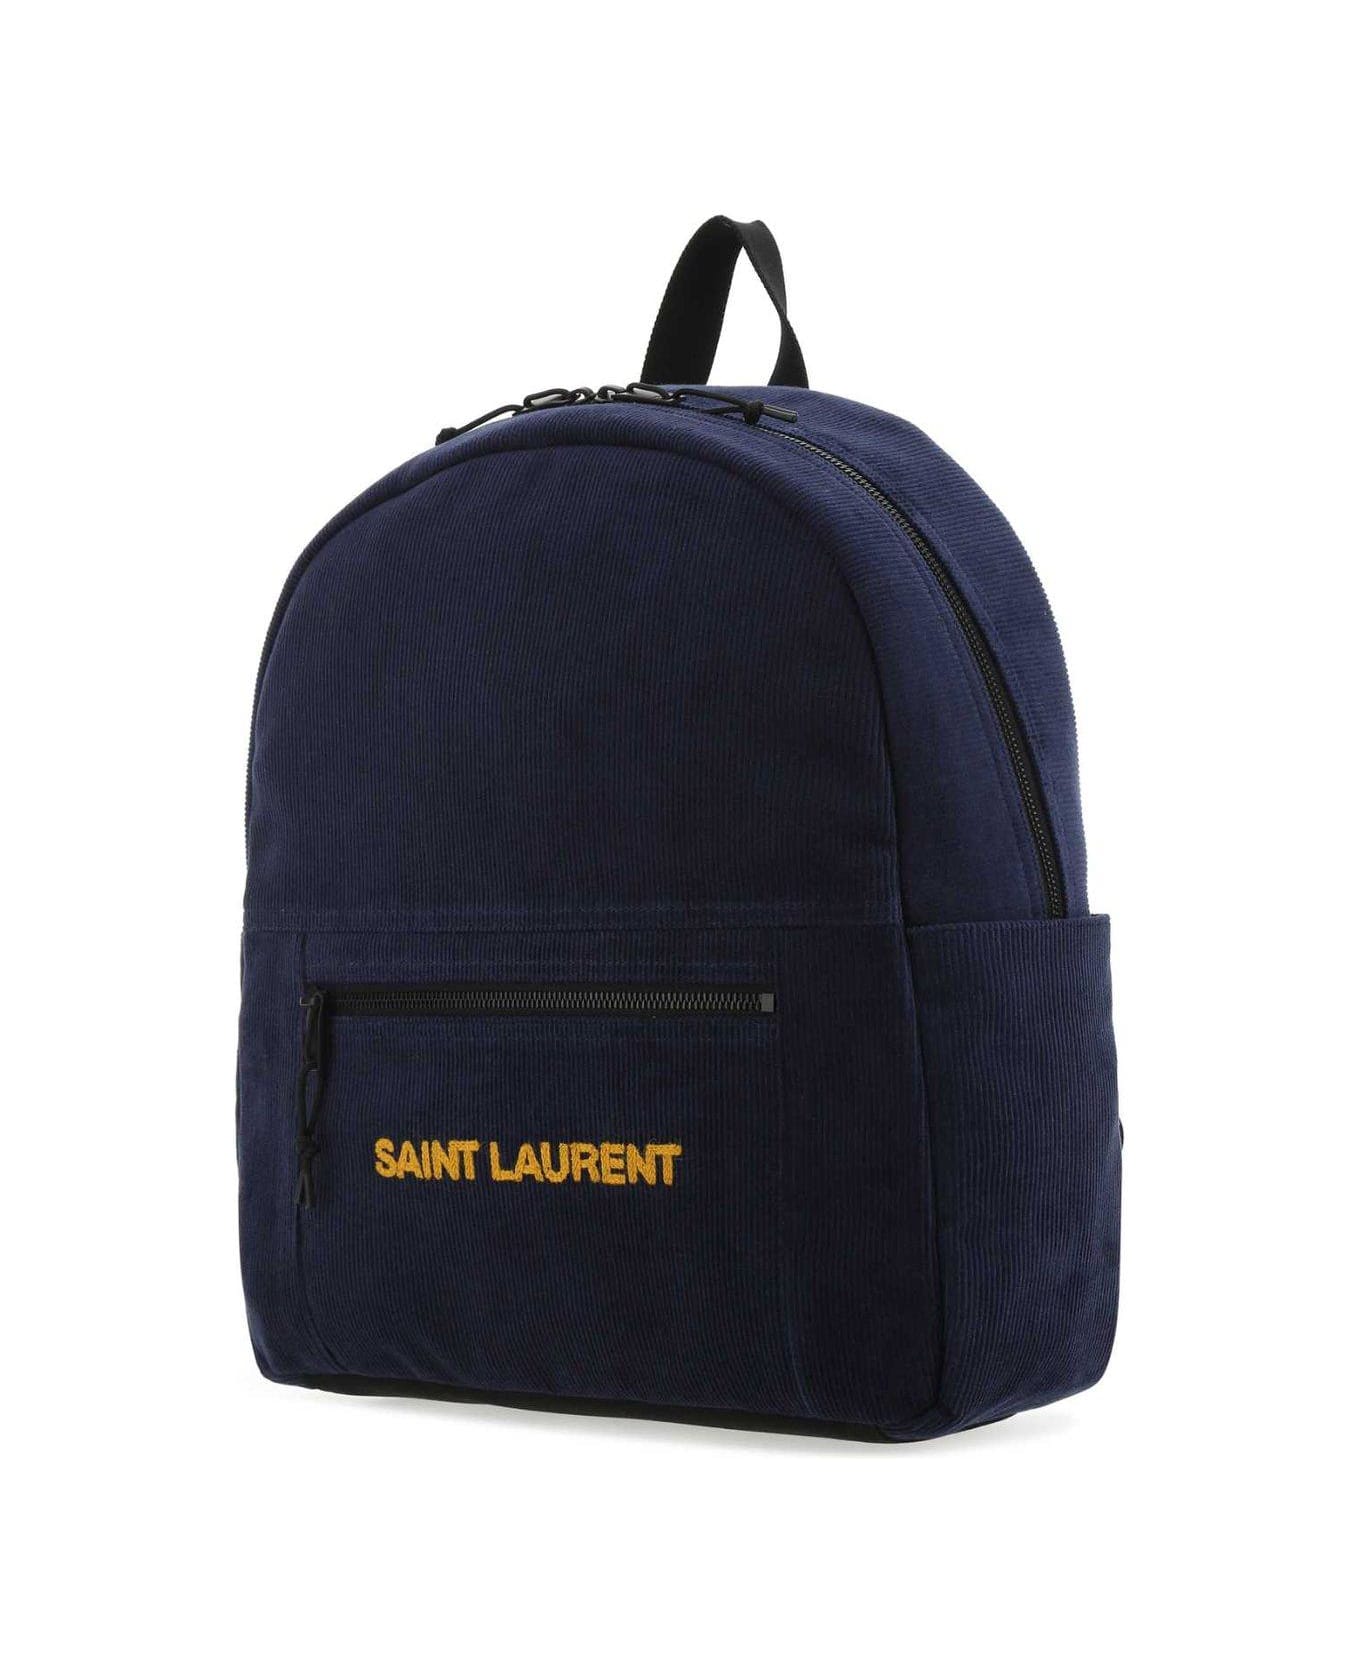 Saint Laurent Nuxx Zipped Backpack - BLUE